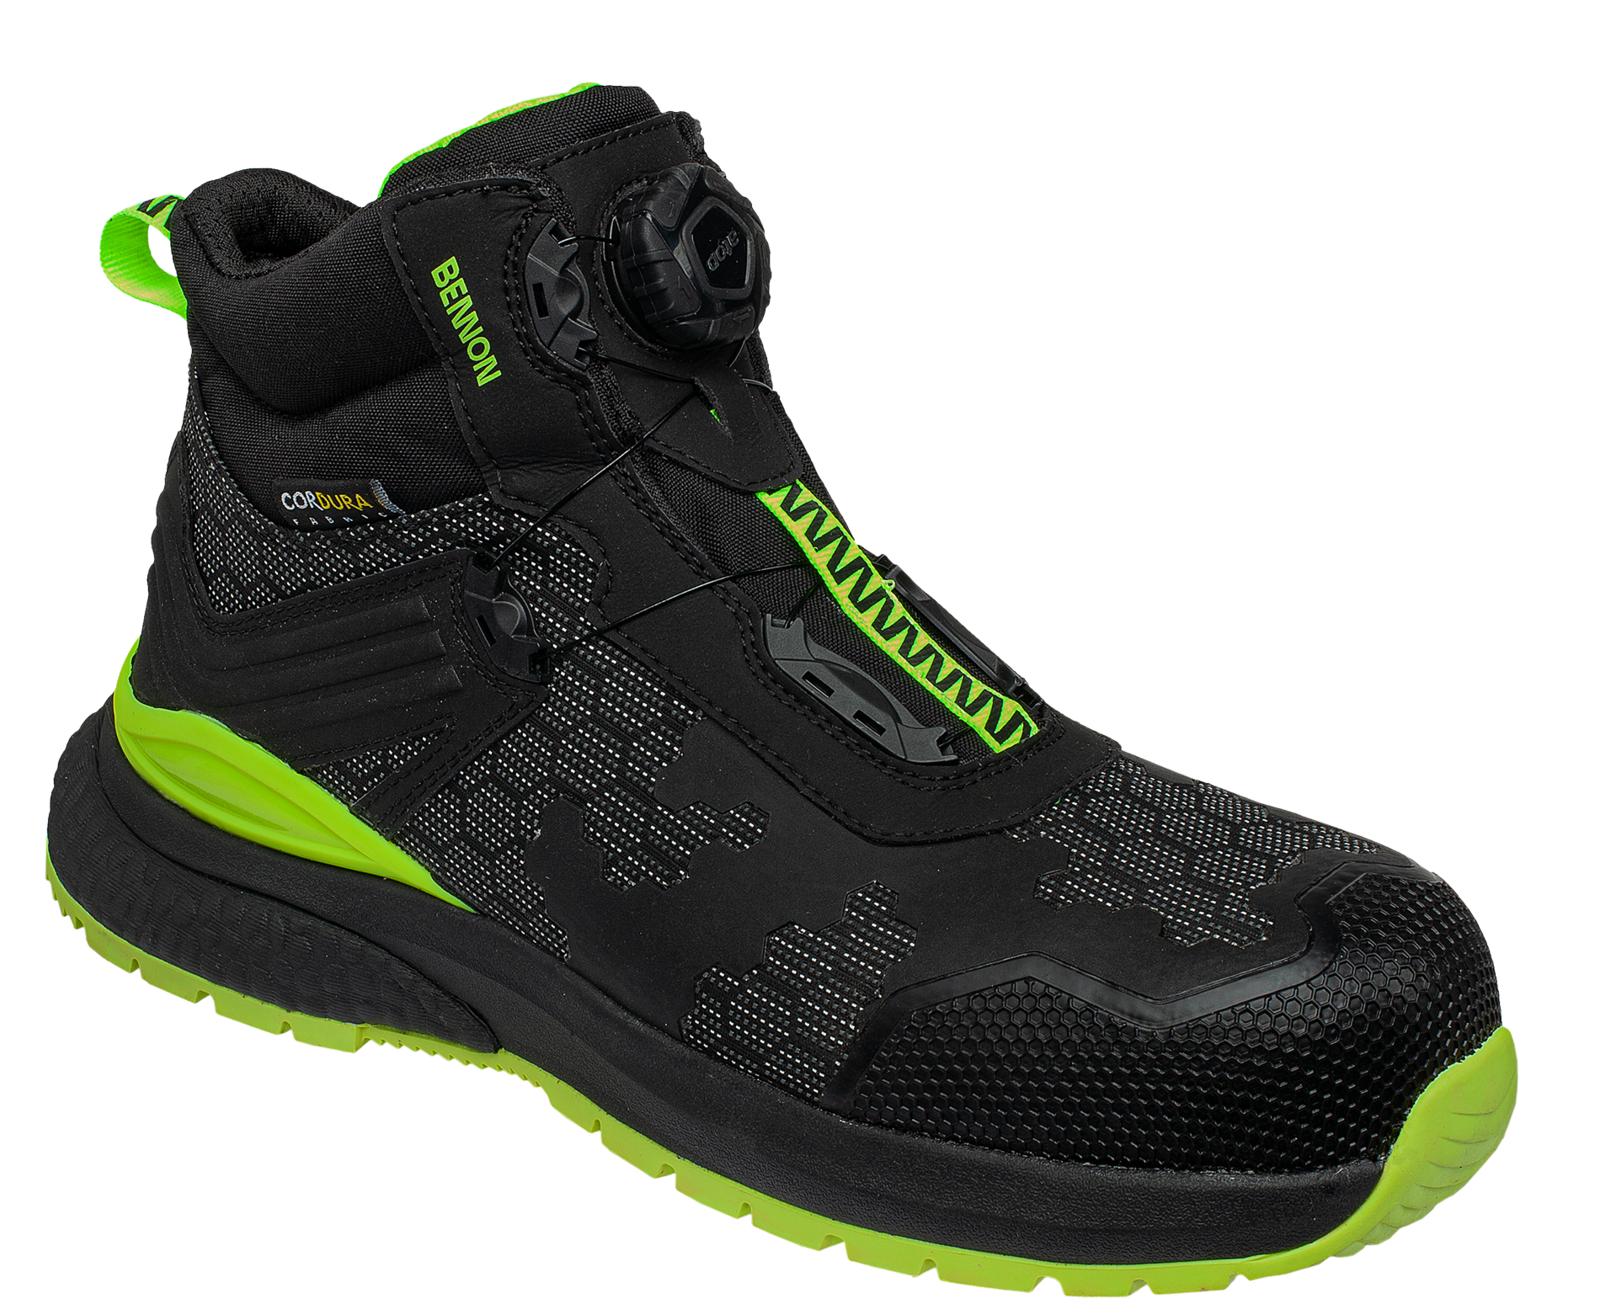 Bezpečnostná obuv Bennon Predator S3 ESD High - veľkosť: 42, farba: čierna/zelená